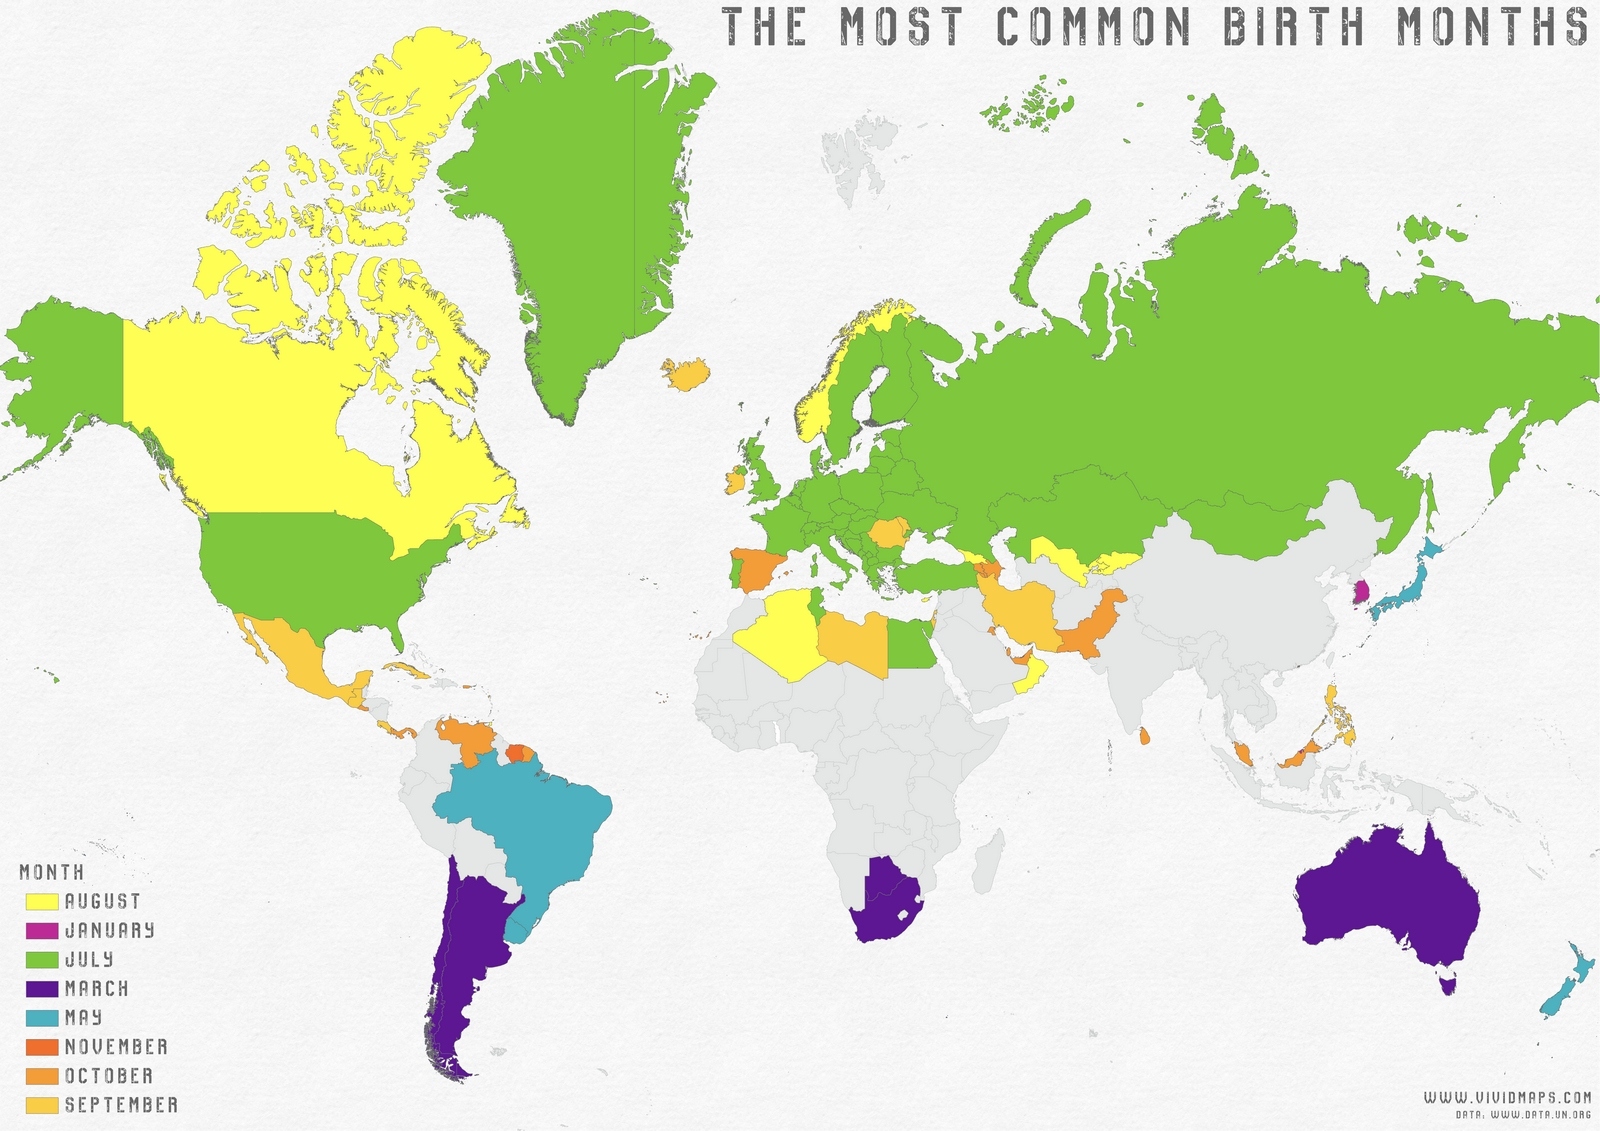 世界各国の一番多い 生まれ月 を表示した世界地図 秋元 サイボウズラボ プログラマー ブログ